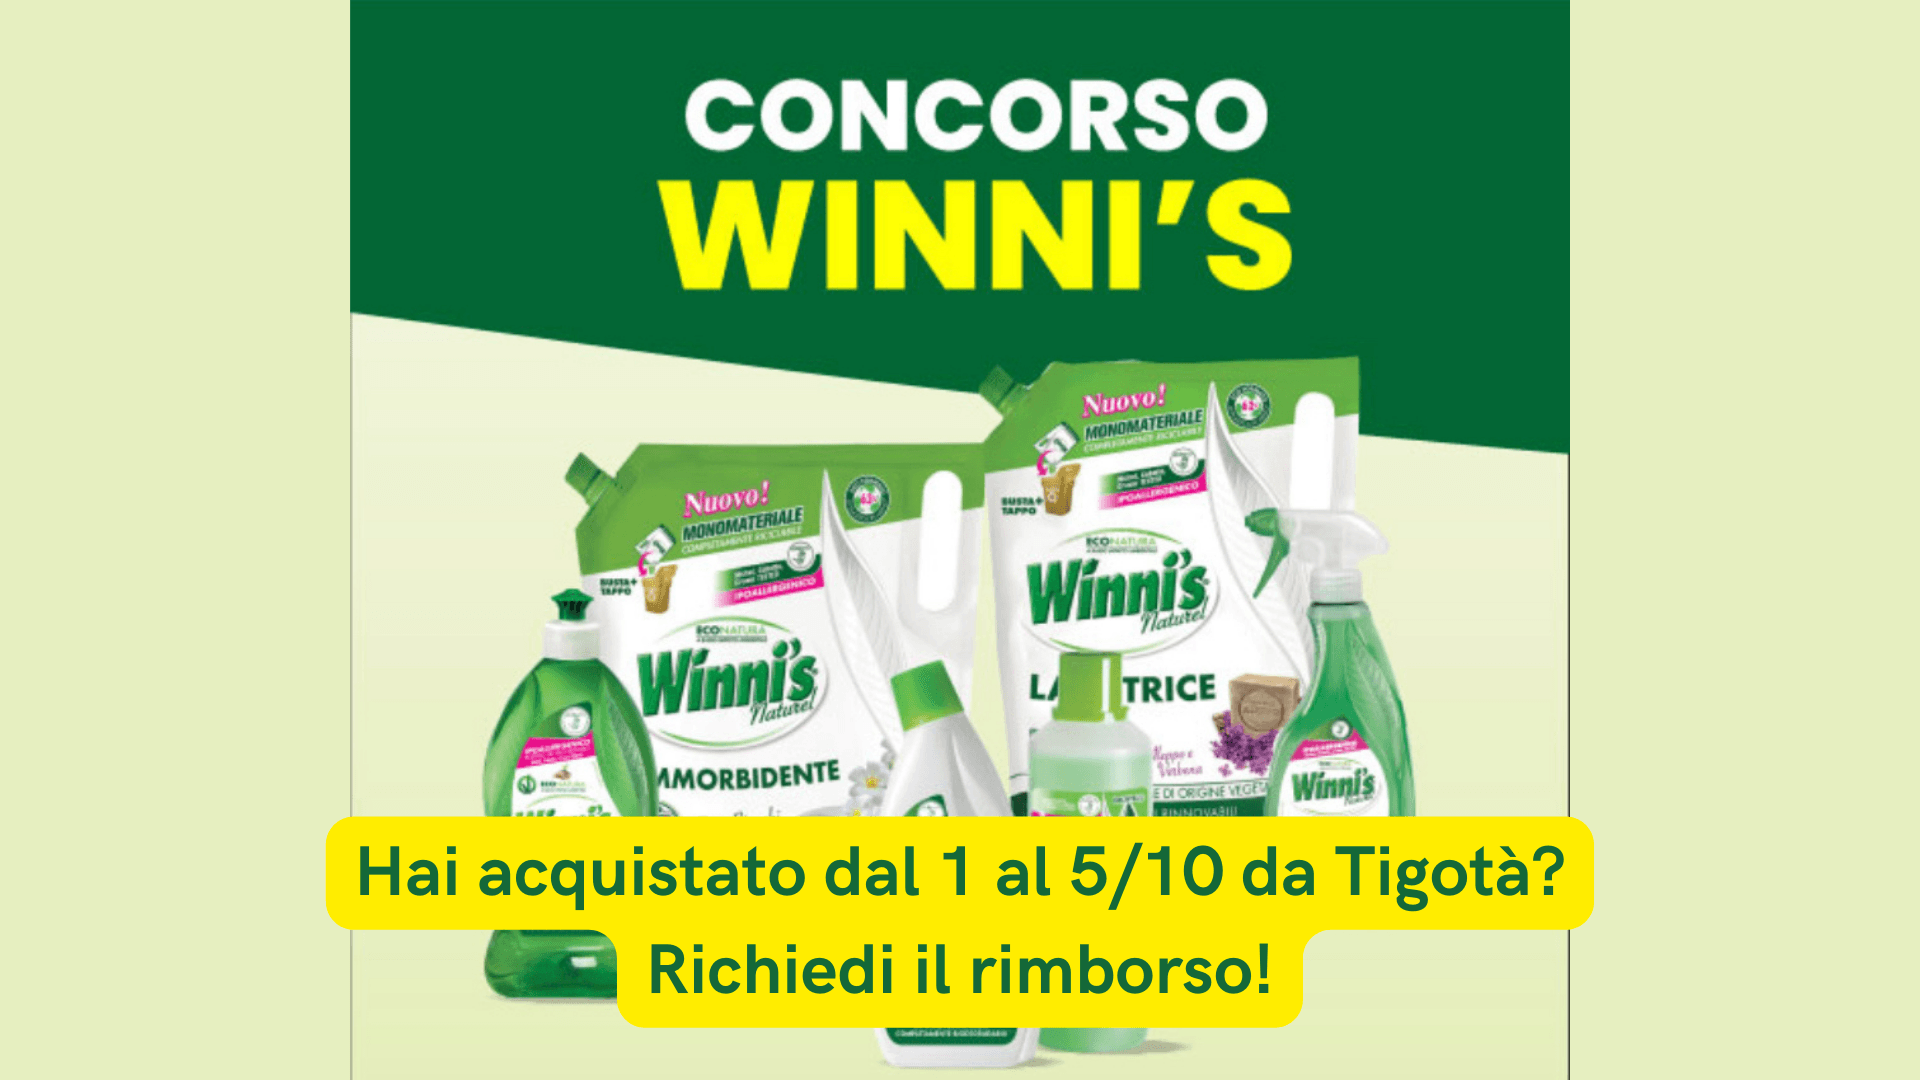 Hai acquistato Winni’s da Tigotà prima del 6 ottobre? Riceverai un buono! 2